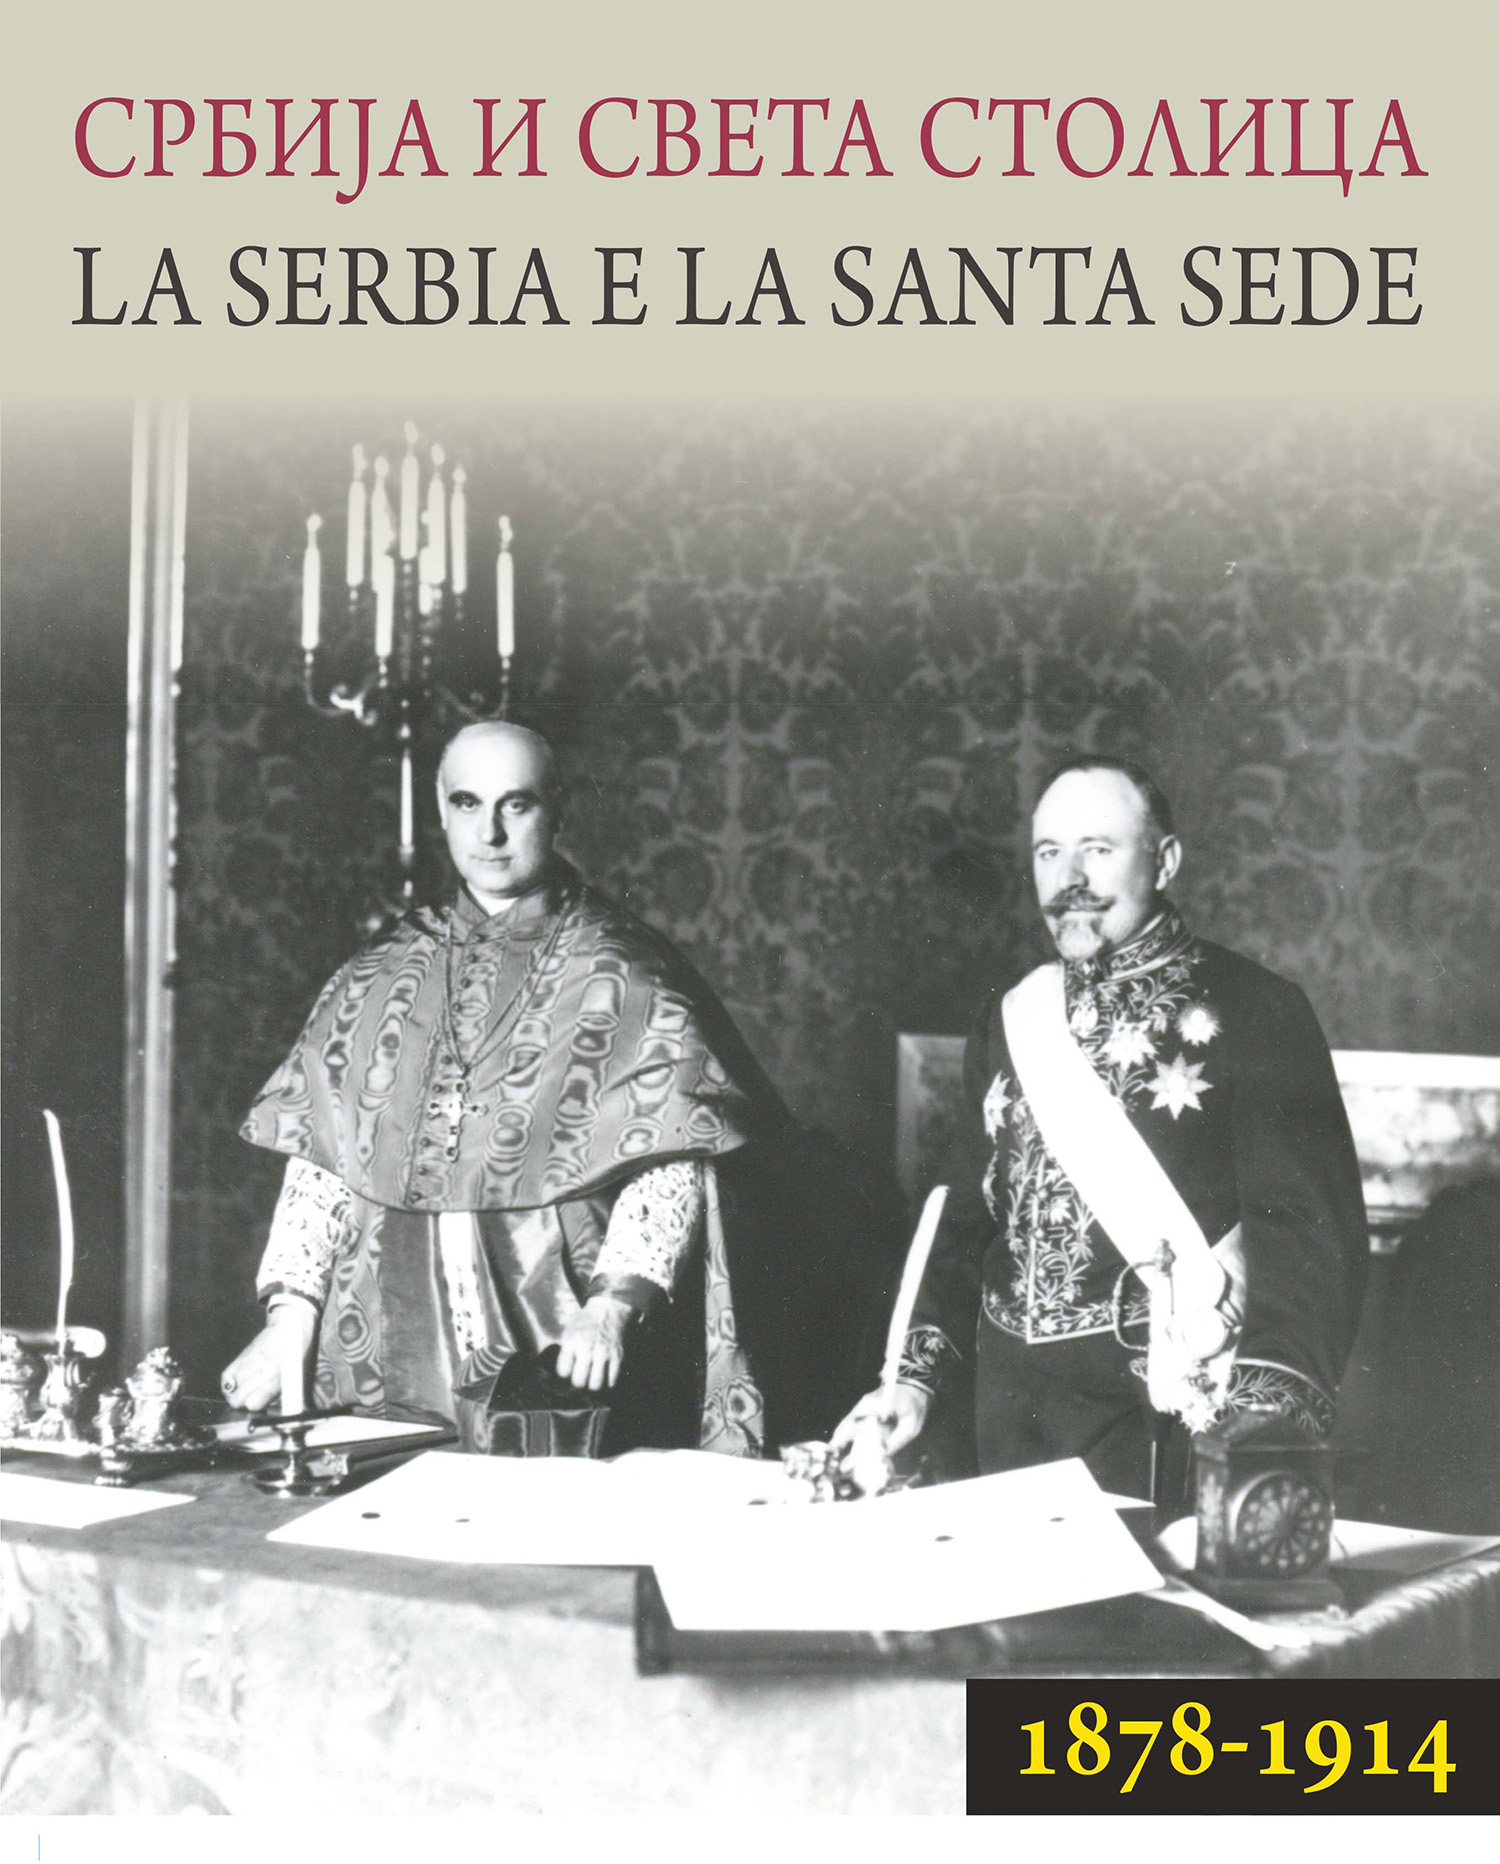 Србија и Света Столица 1878–1914 / La Serbia e la Santa Sede tra il 1878 e il 1914